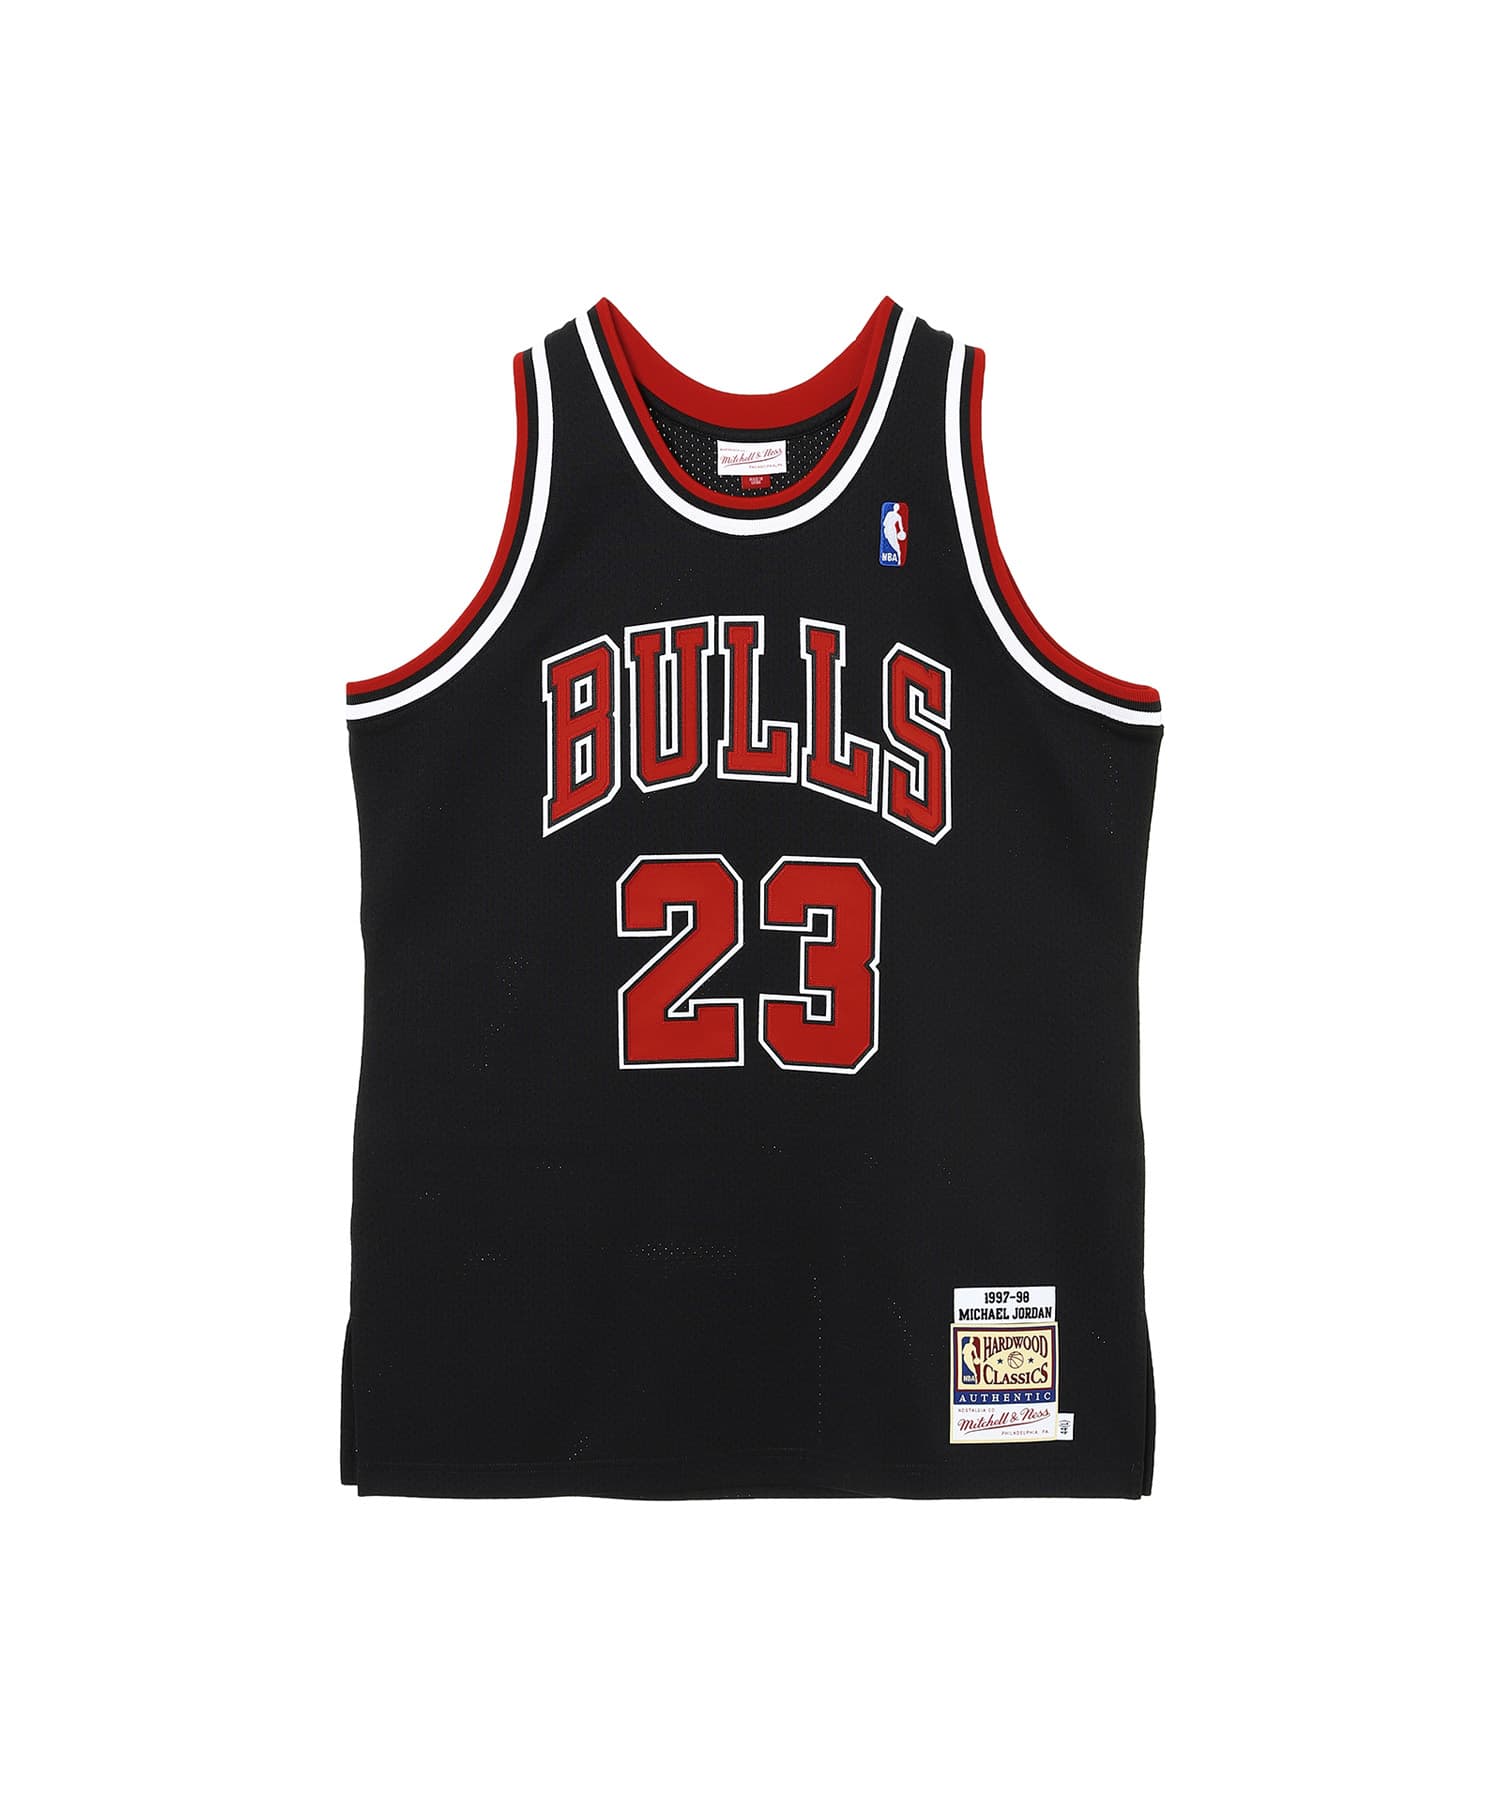 シカゴ・ブルズ (Chicago Bulls) ユニフォーム スティーブカー 